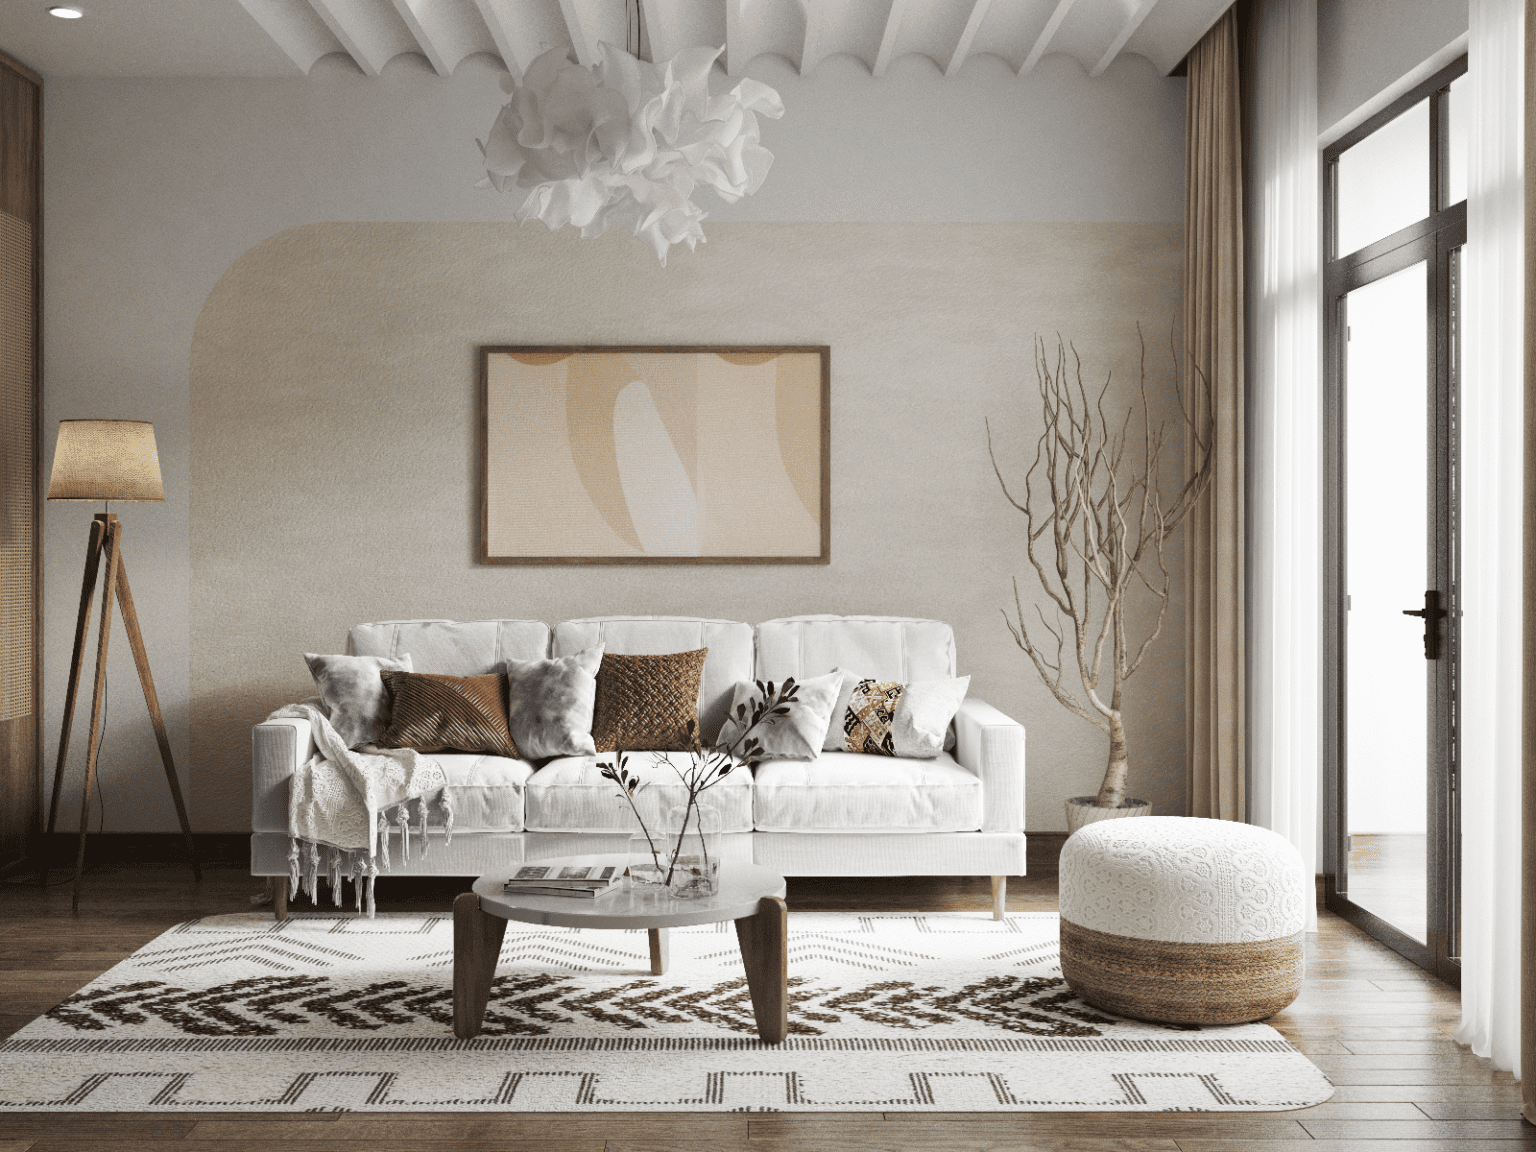 Living Room SketchUp Models for Download 